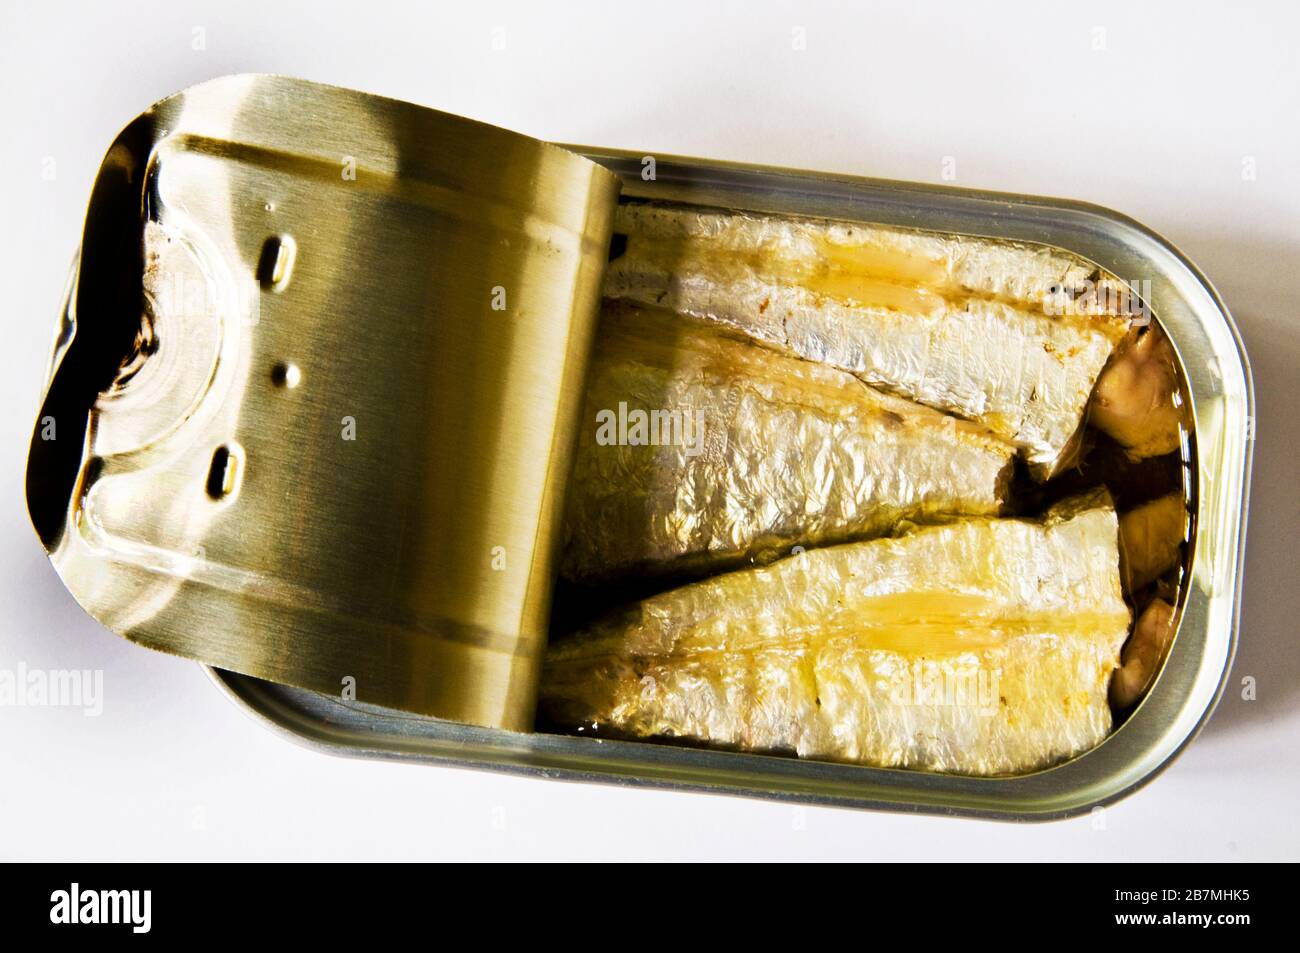 Les sardines sont un petit poisson riche en nutriments et une source d'acides gras oméga-3. Ils sont généralement servis en boîtes. Banque D'Images